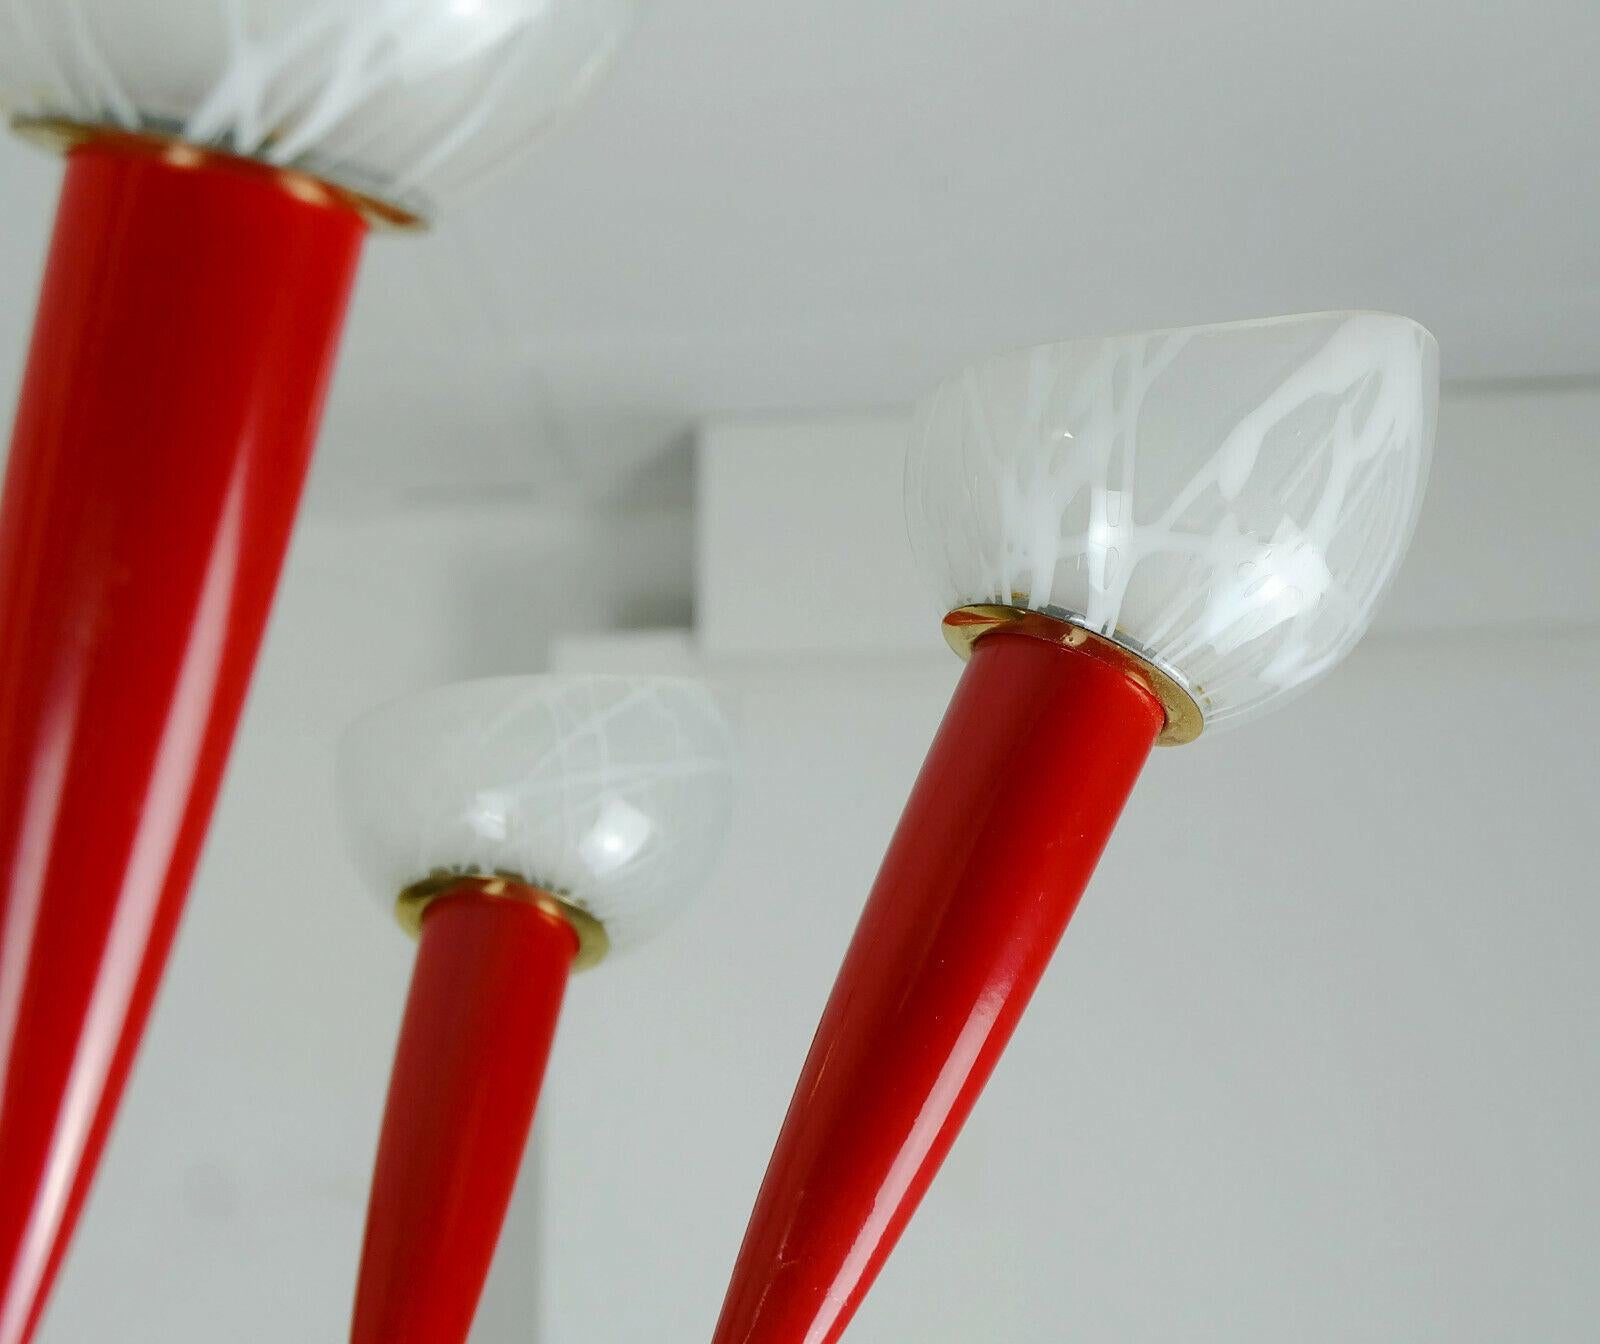 Fantastique et élégante lampe à suspension des années 1950. Réalisé en laiton, métal laqué rouge (au centre), plastique rouge et verre blanc. Contient 7 ampoules E14 (les ampoules sur les photos ne sont pas incluses dans le prix).

Très bon état,